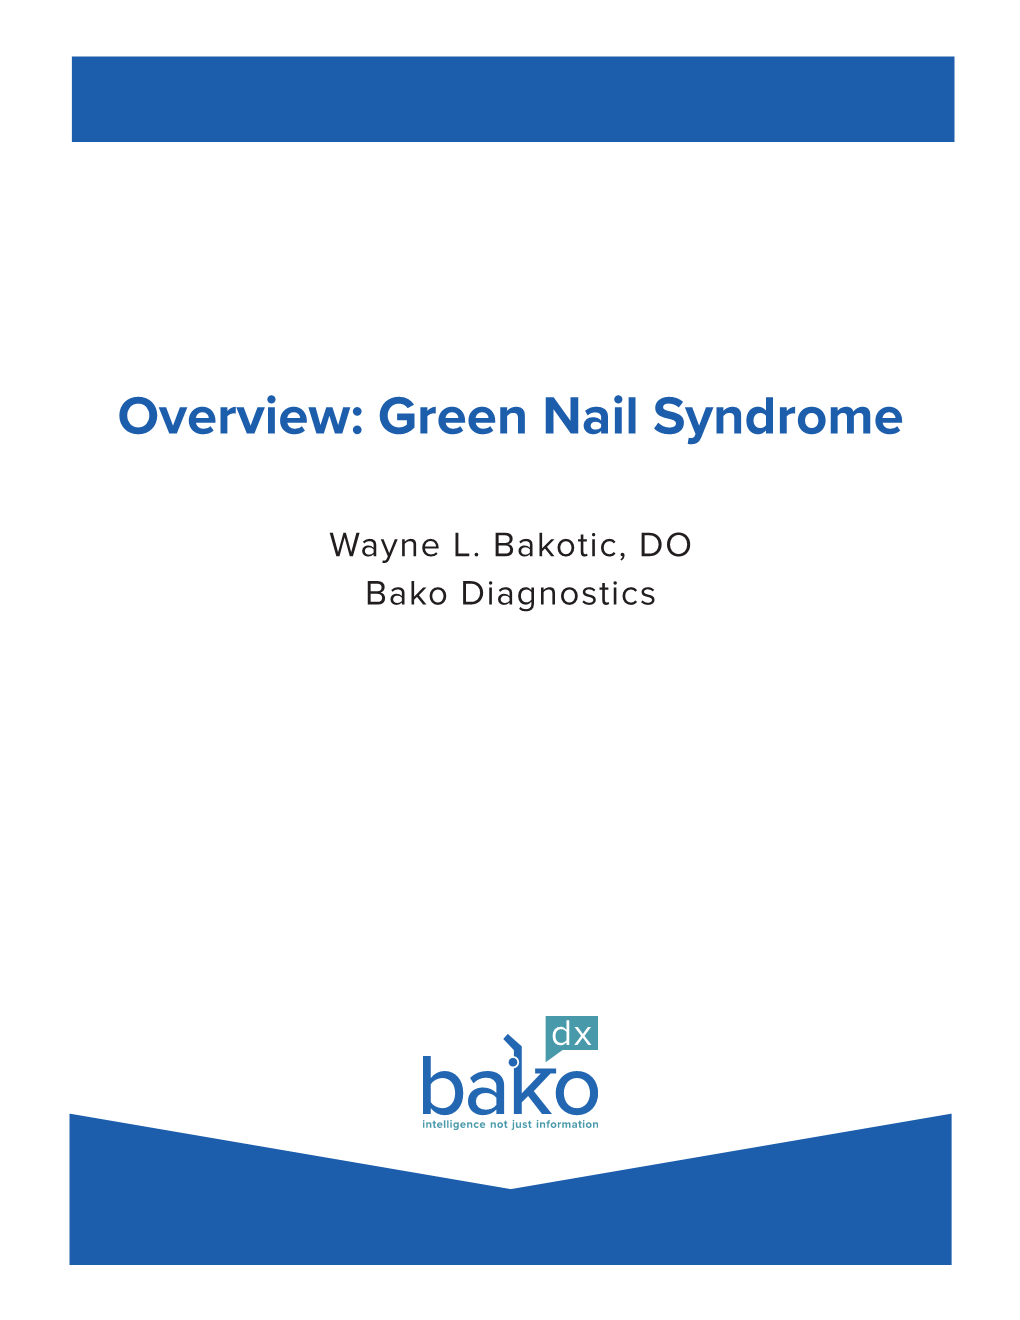 Green Nail Syndrome